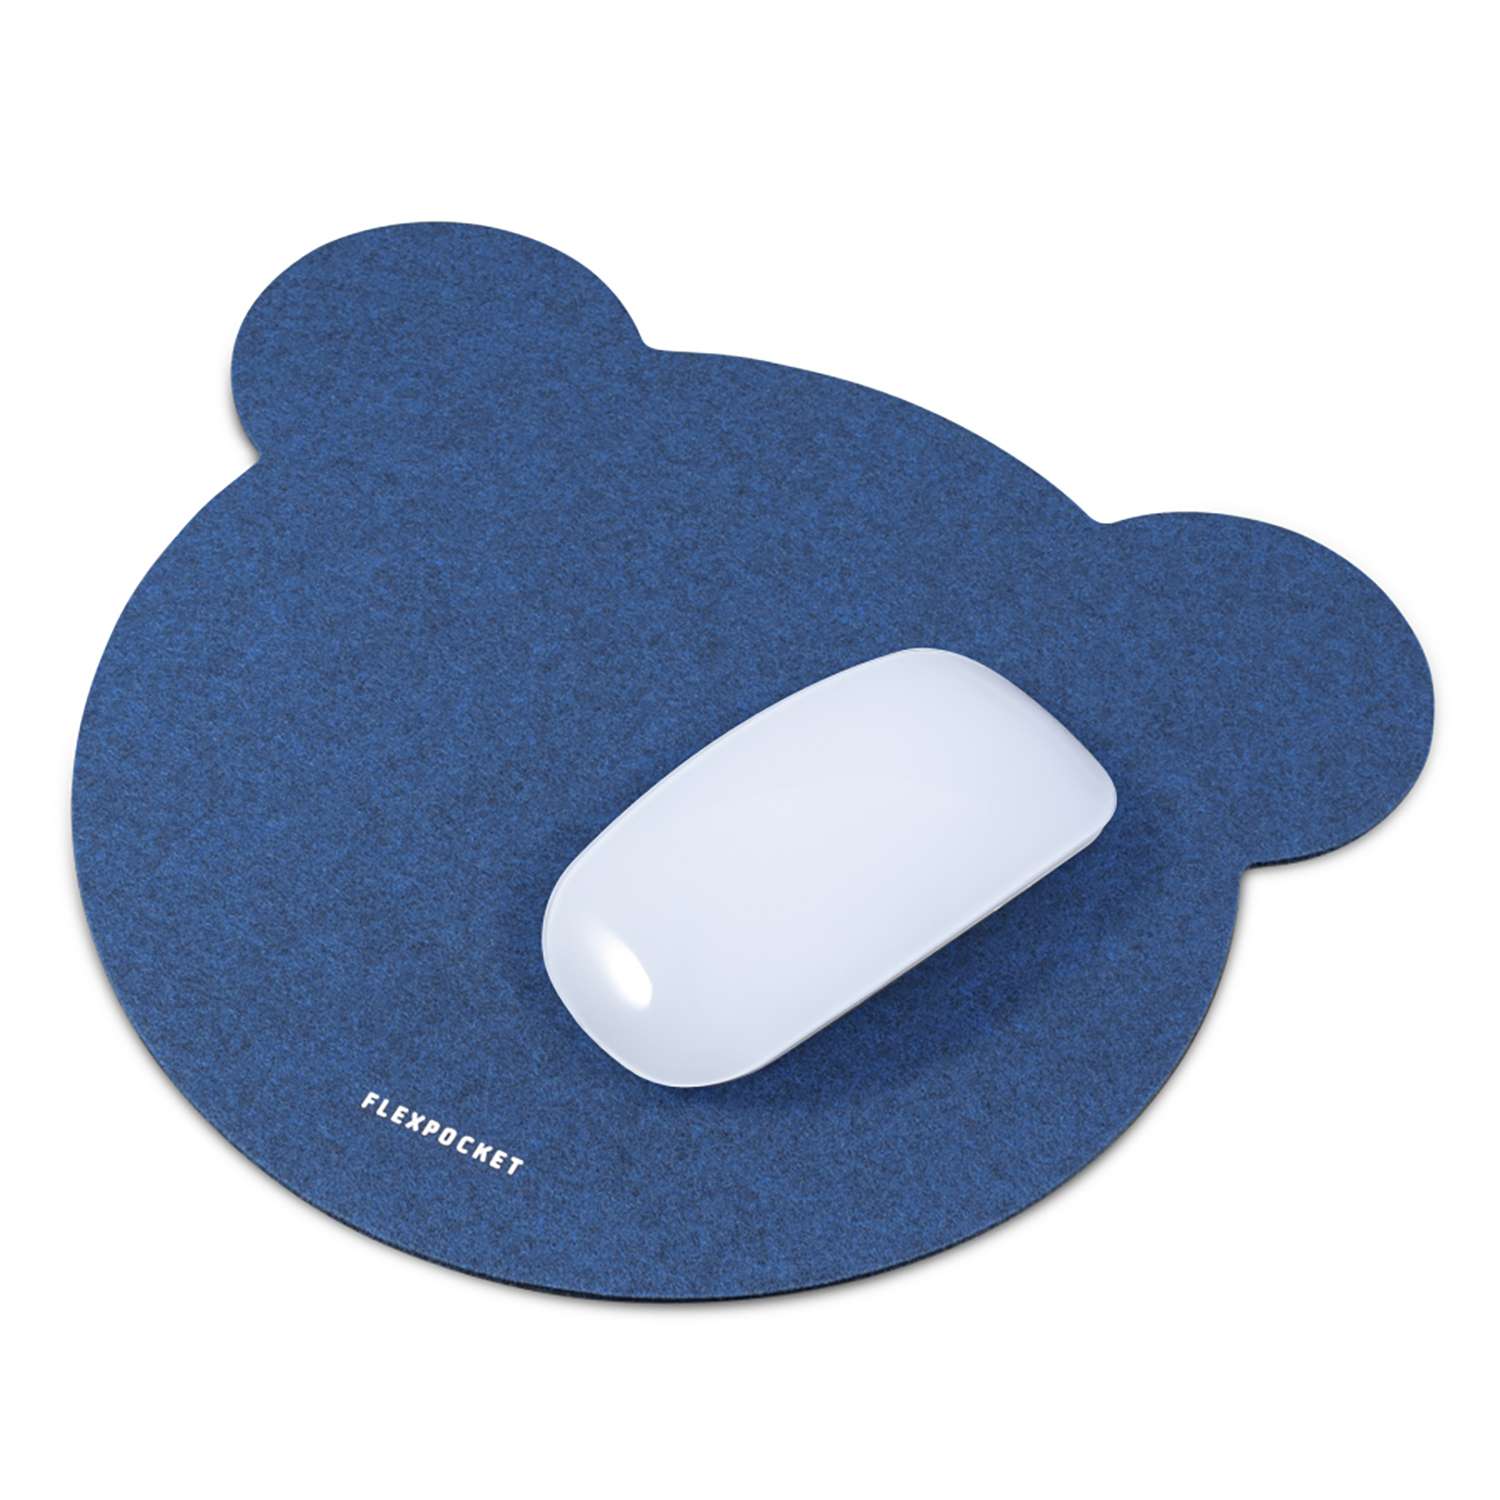 Настольный коврик Flexpocket для мыши 250х250мм синий - фото 2